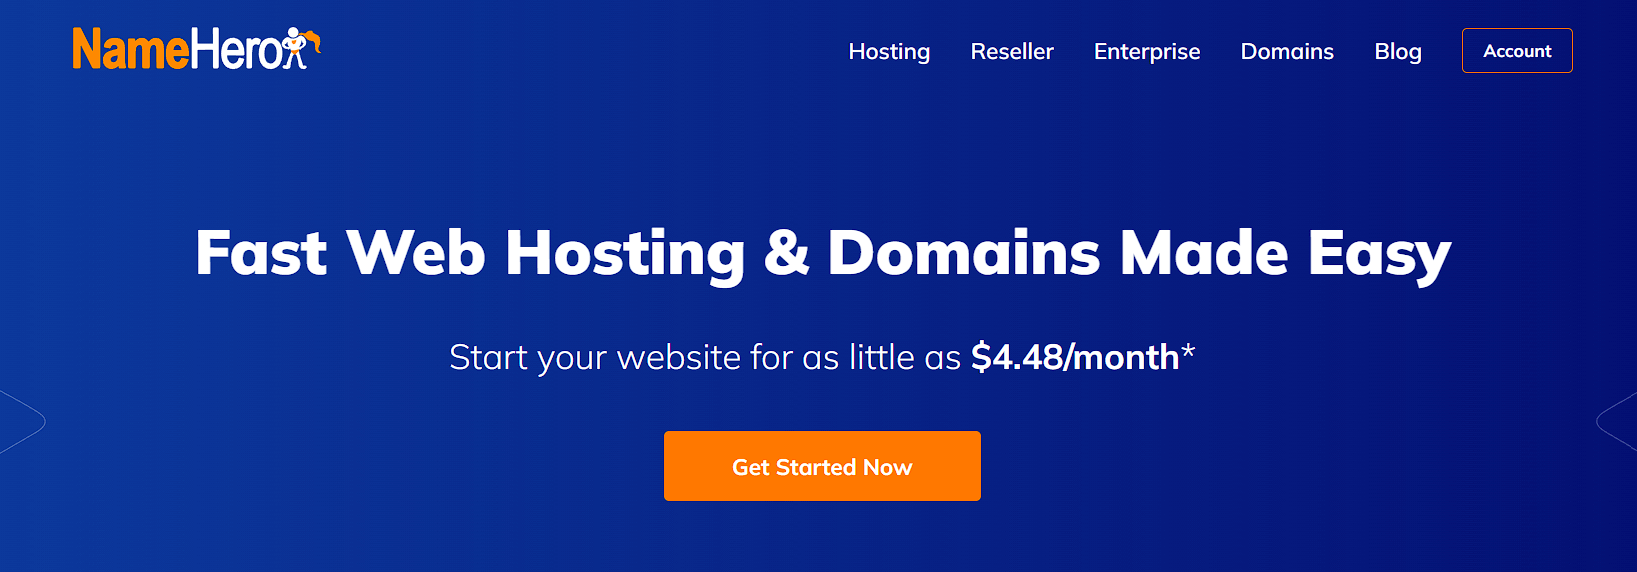 namehero web hosting provider